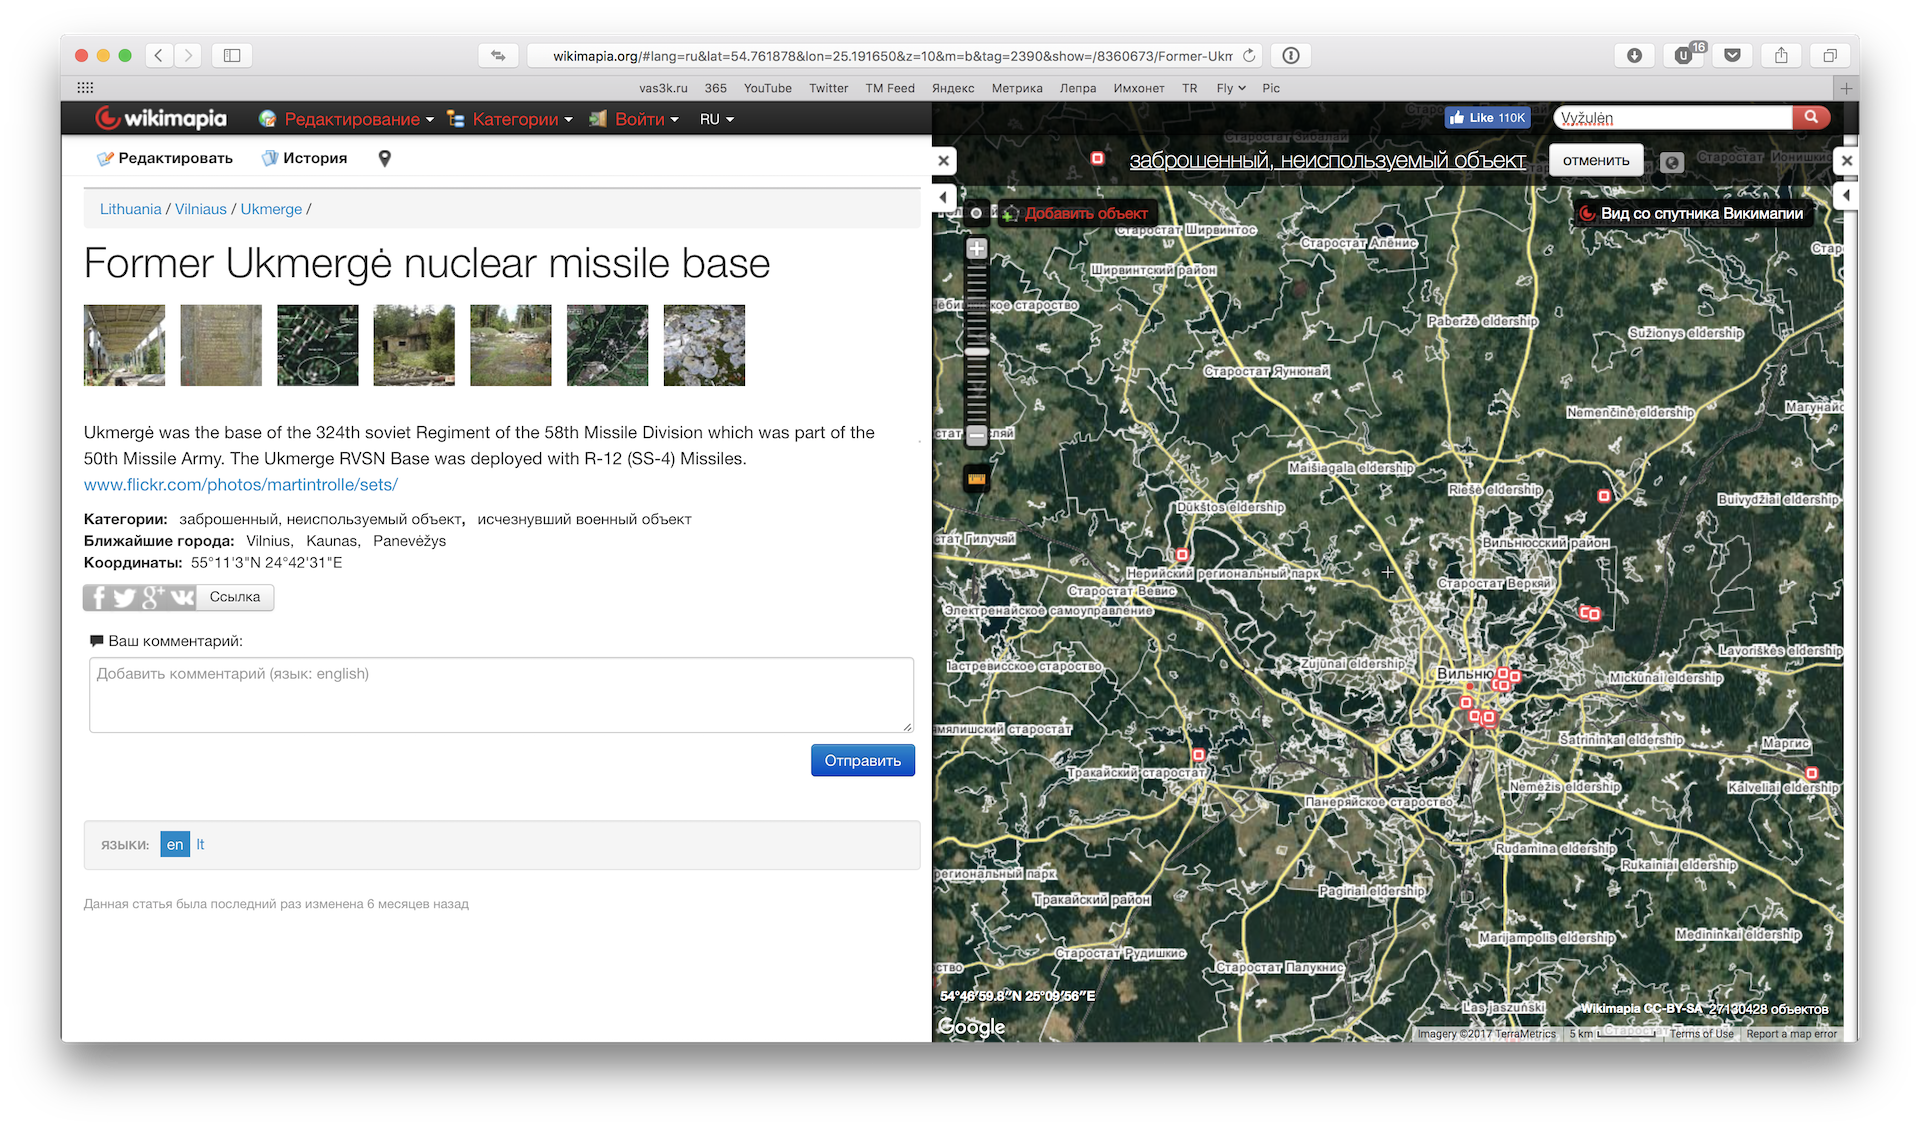 Викимапия с удовольствием расскажет где лежало советское ядерное оружие